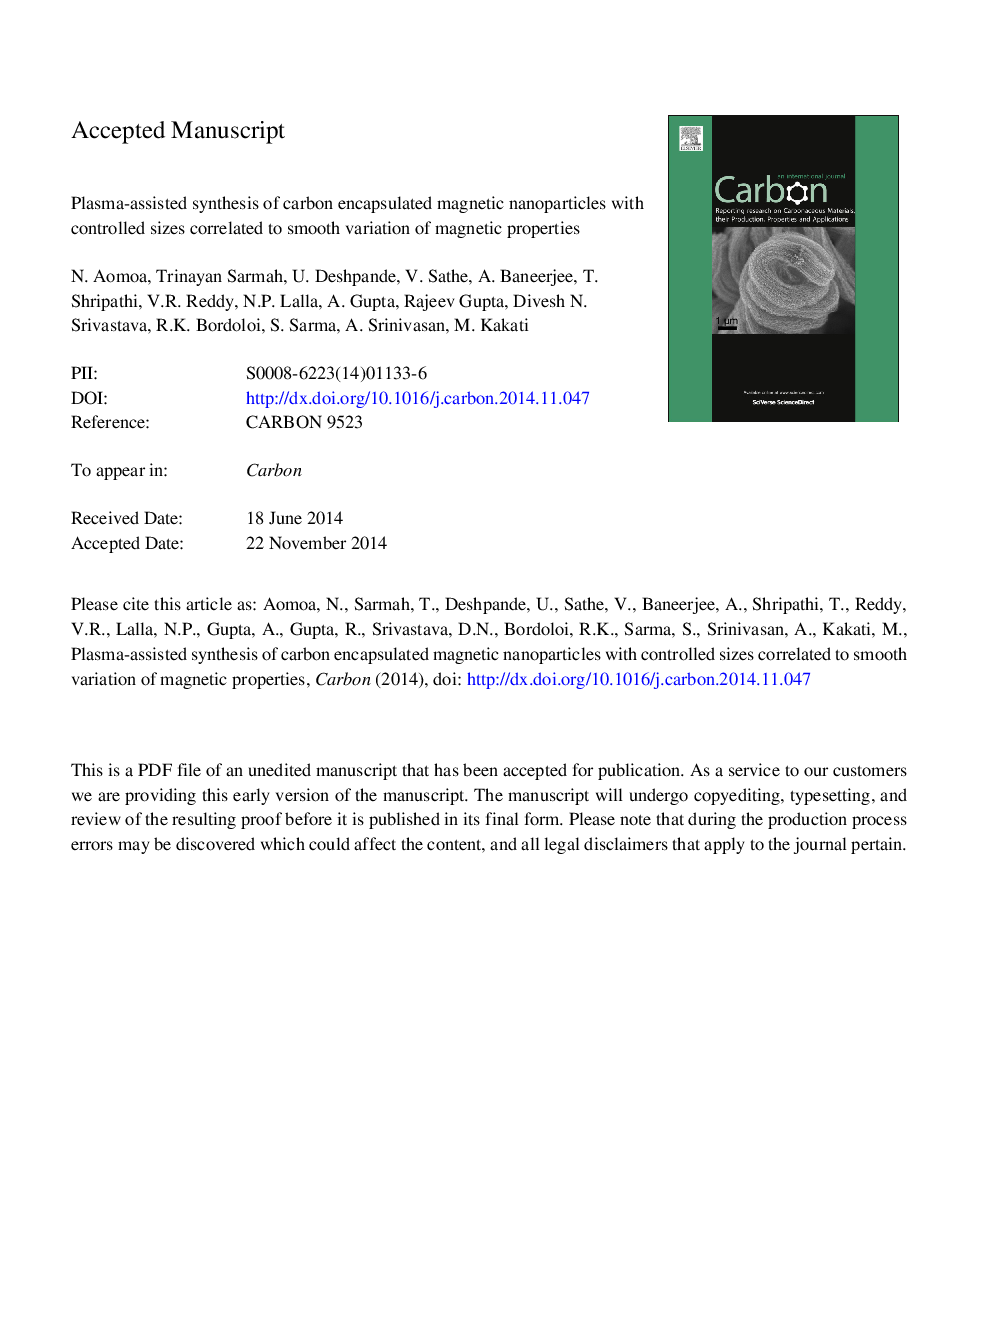 سنتز نانوذرات مغناطیسی کربن با اندازه های کنترل شده با تغییرات صاف خواص مغناطیسی با استفاده از پلاسما 